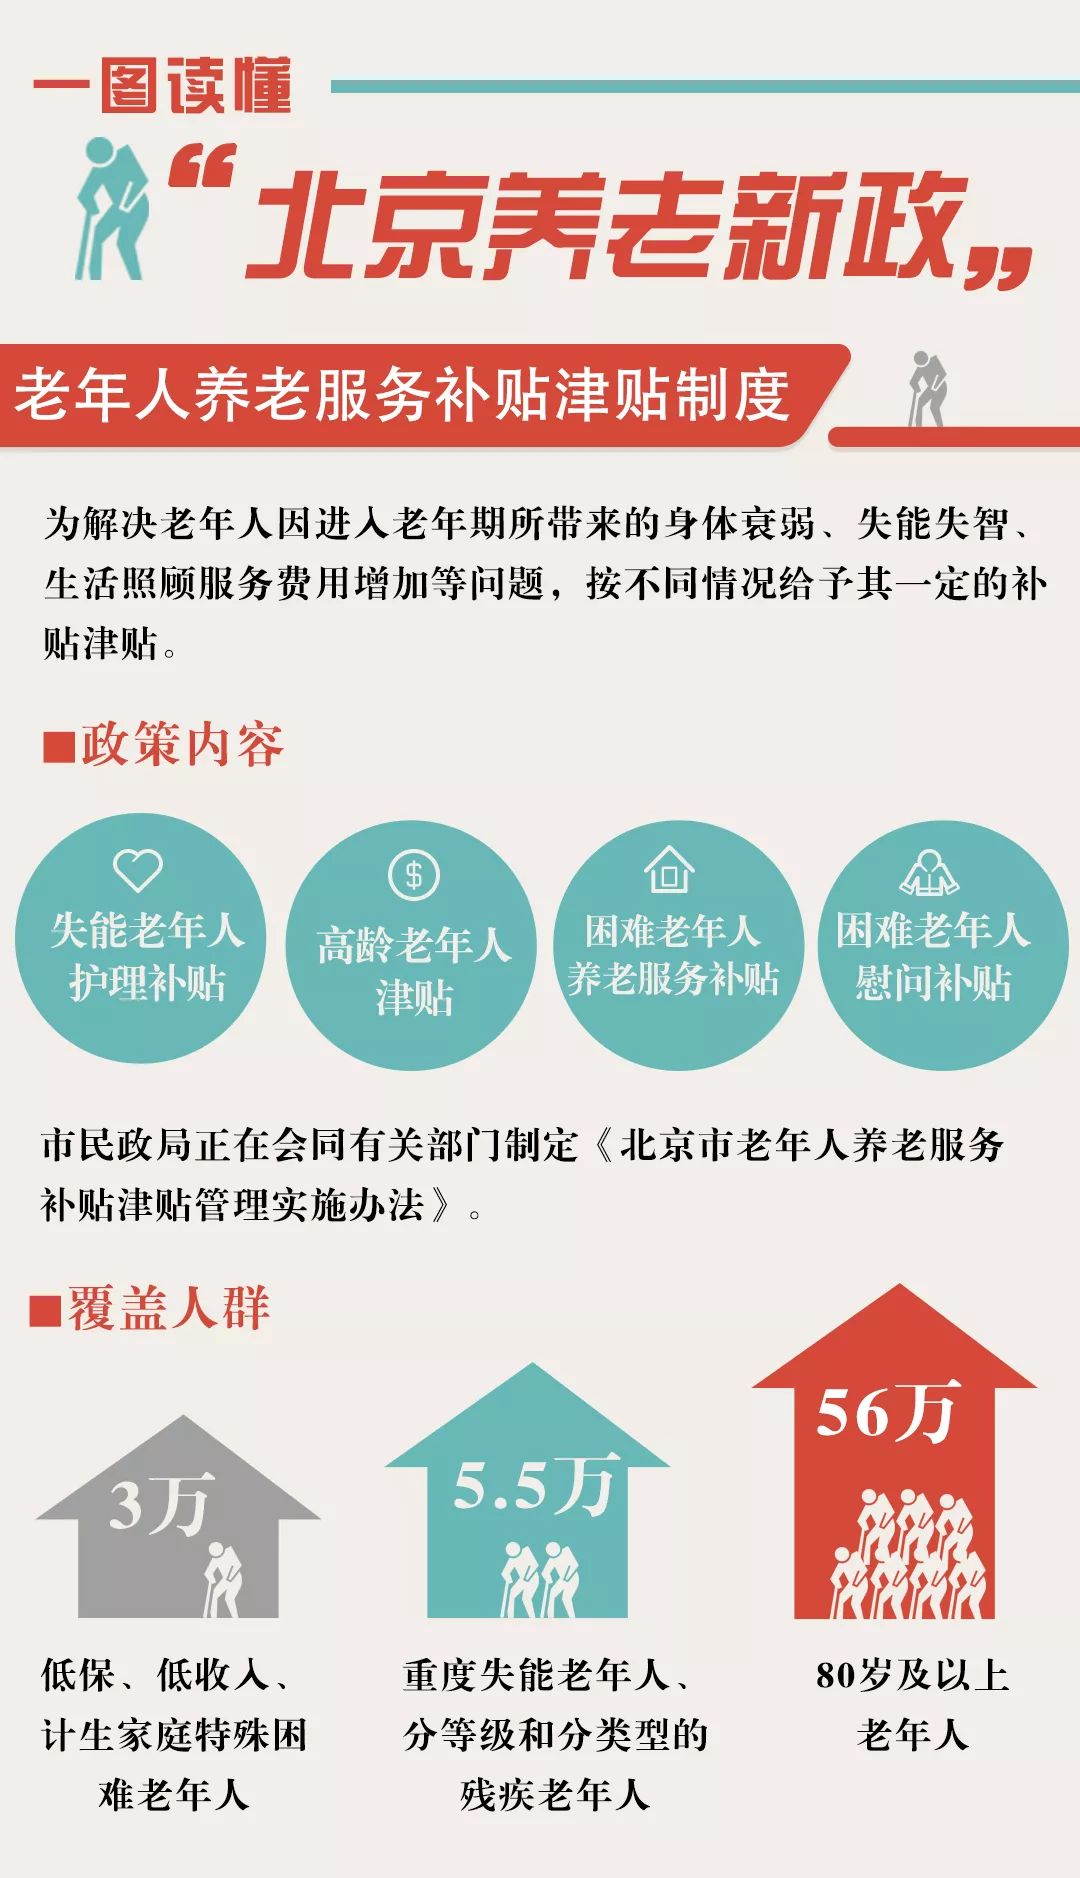 一图读懂北京养老新政其中明确,本市老年人社会优待服务政策的对象